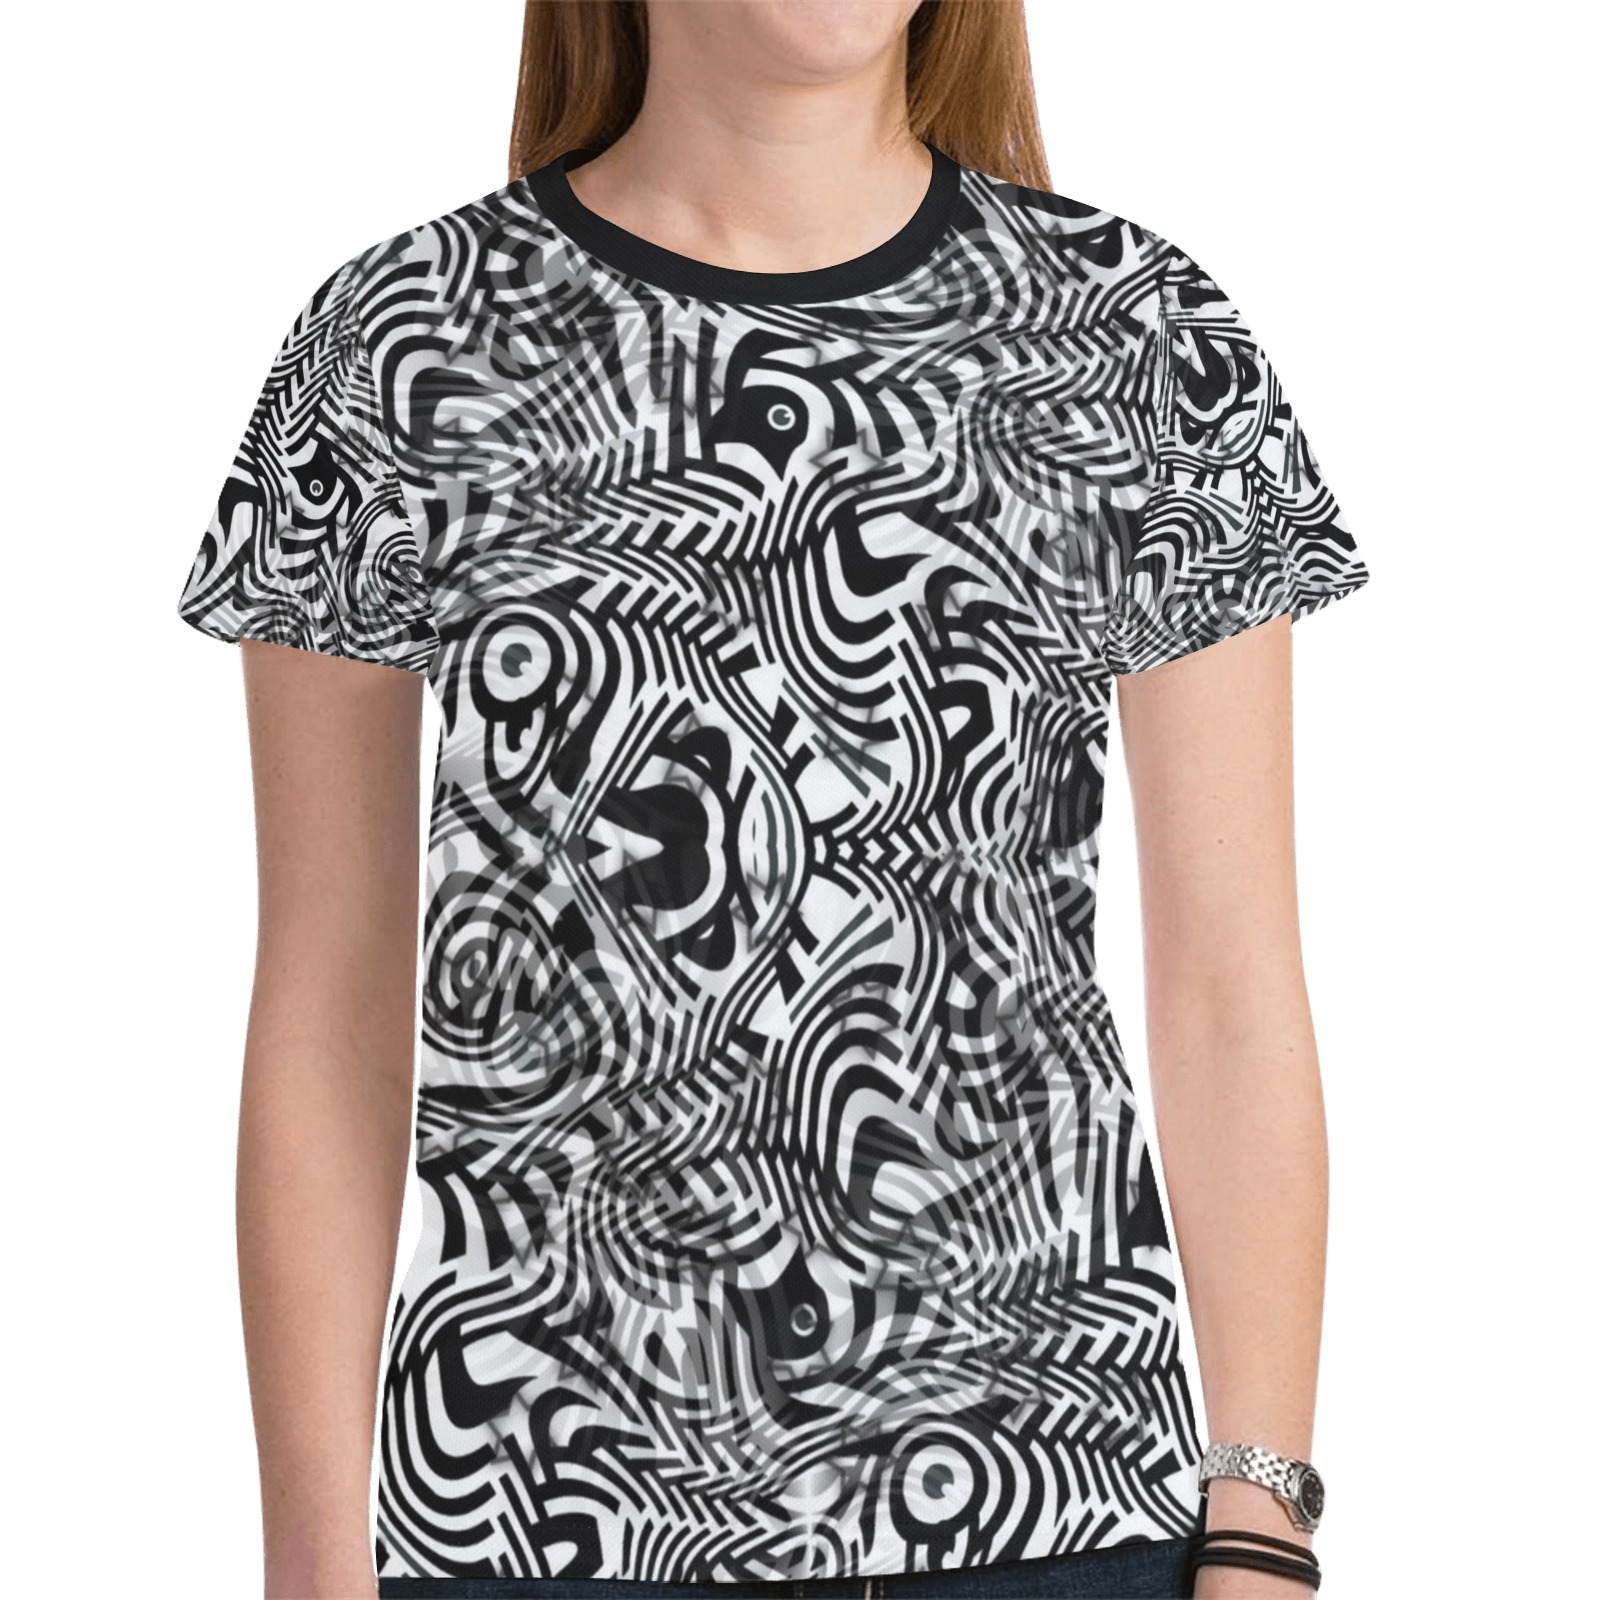 Zebra by Artdream New All Over Print T-shirt for Women (Model T45)